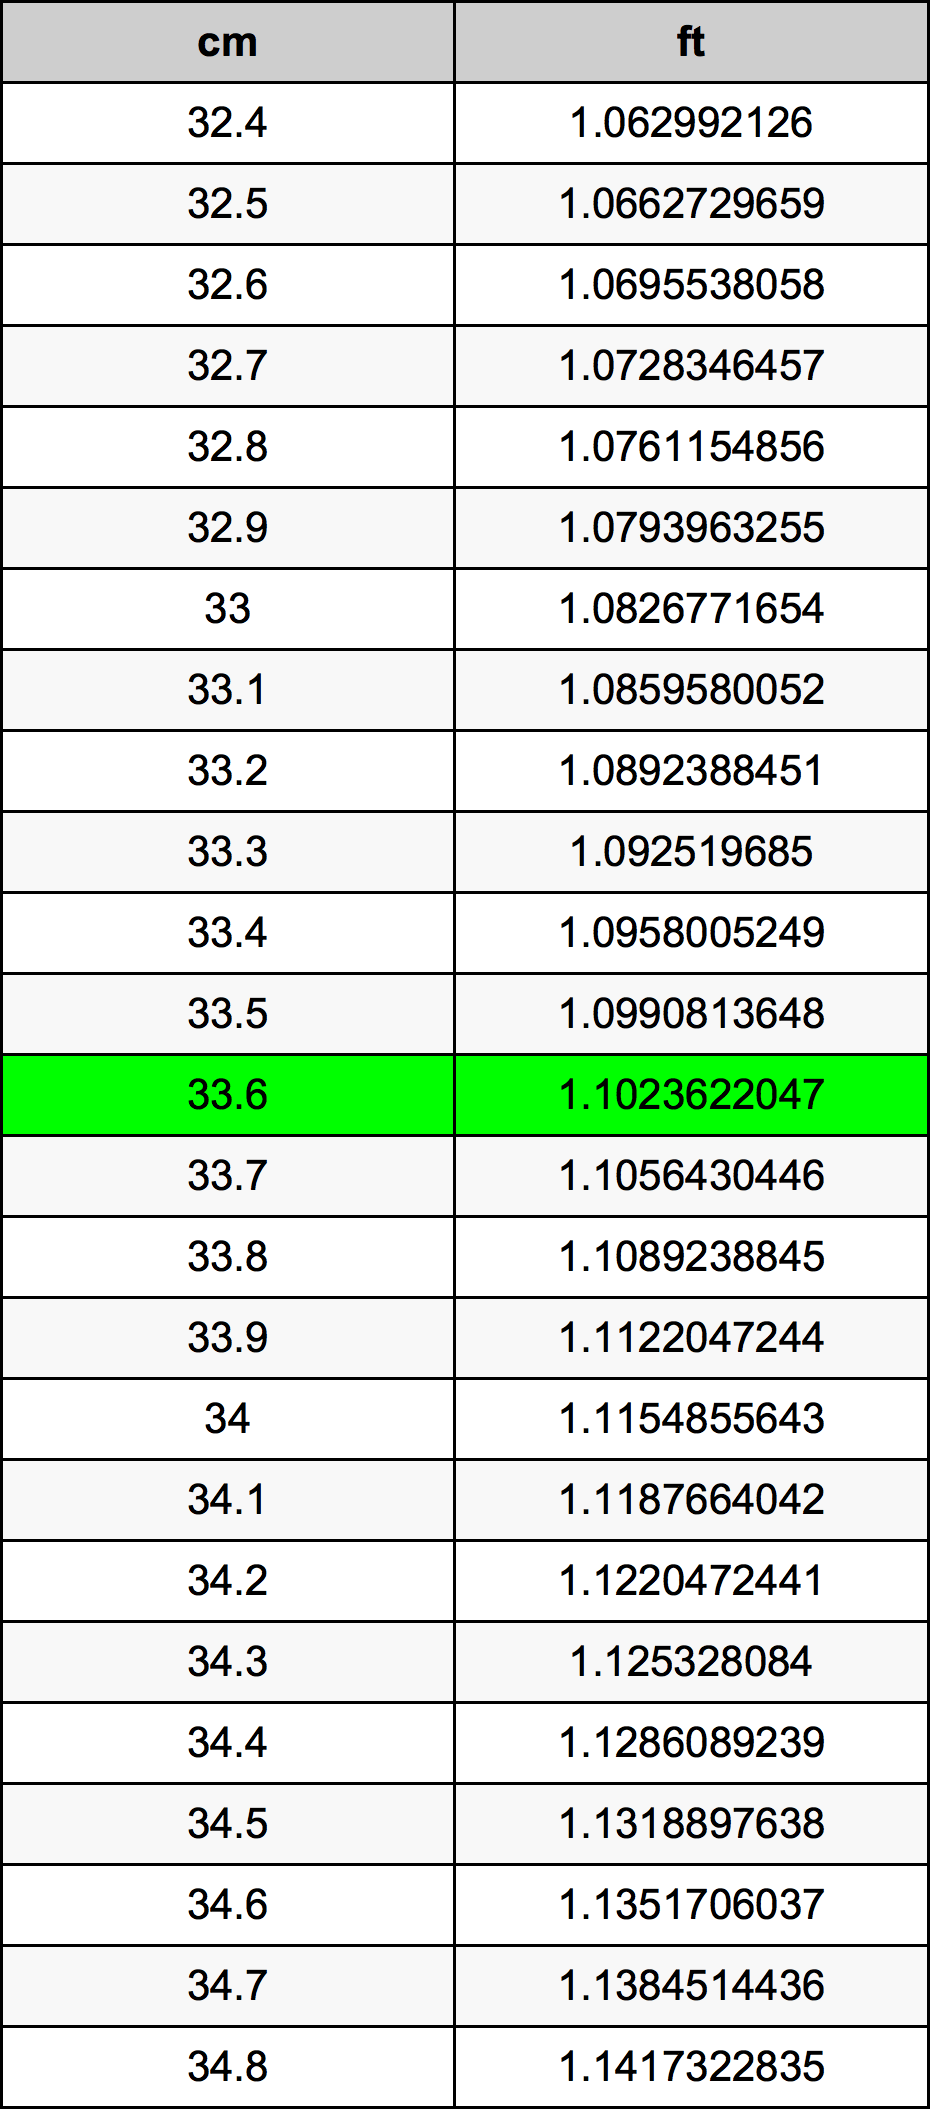 33.6 Centiméter átszámítási táblázat